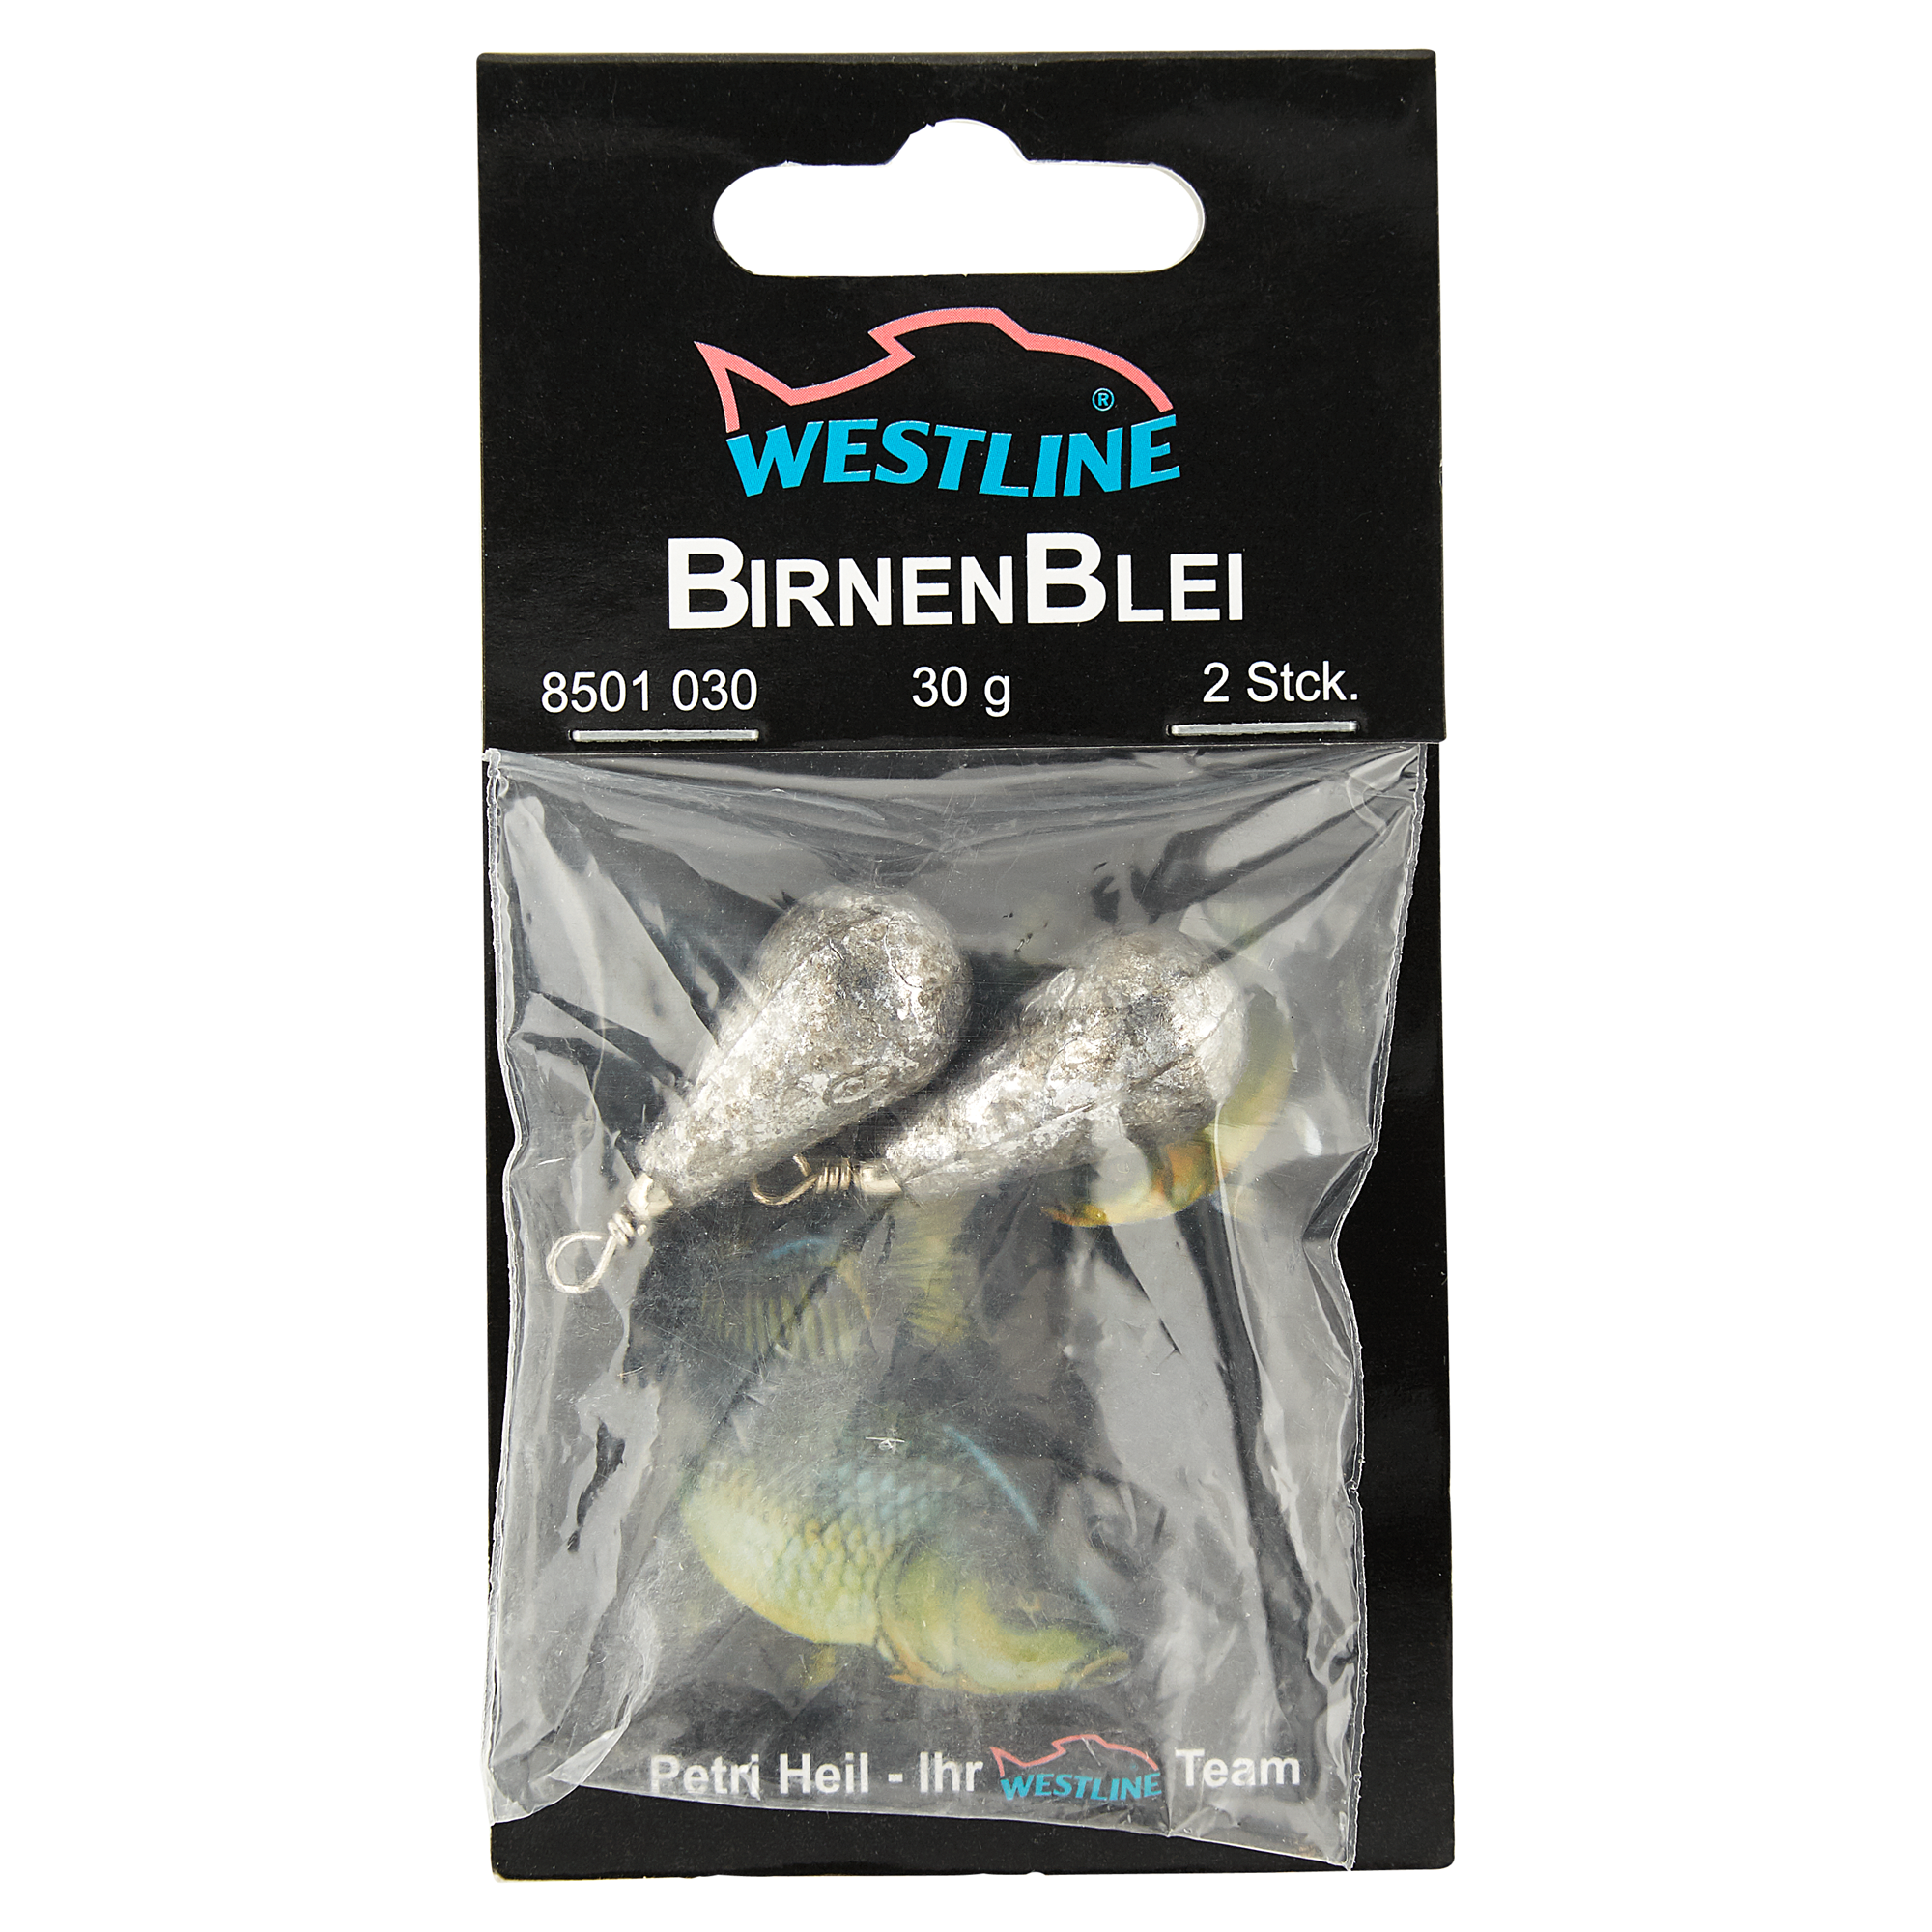 Birnenbleie mit Wirbel 30 g + product picture